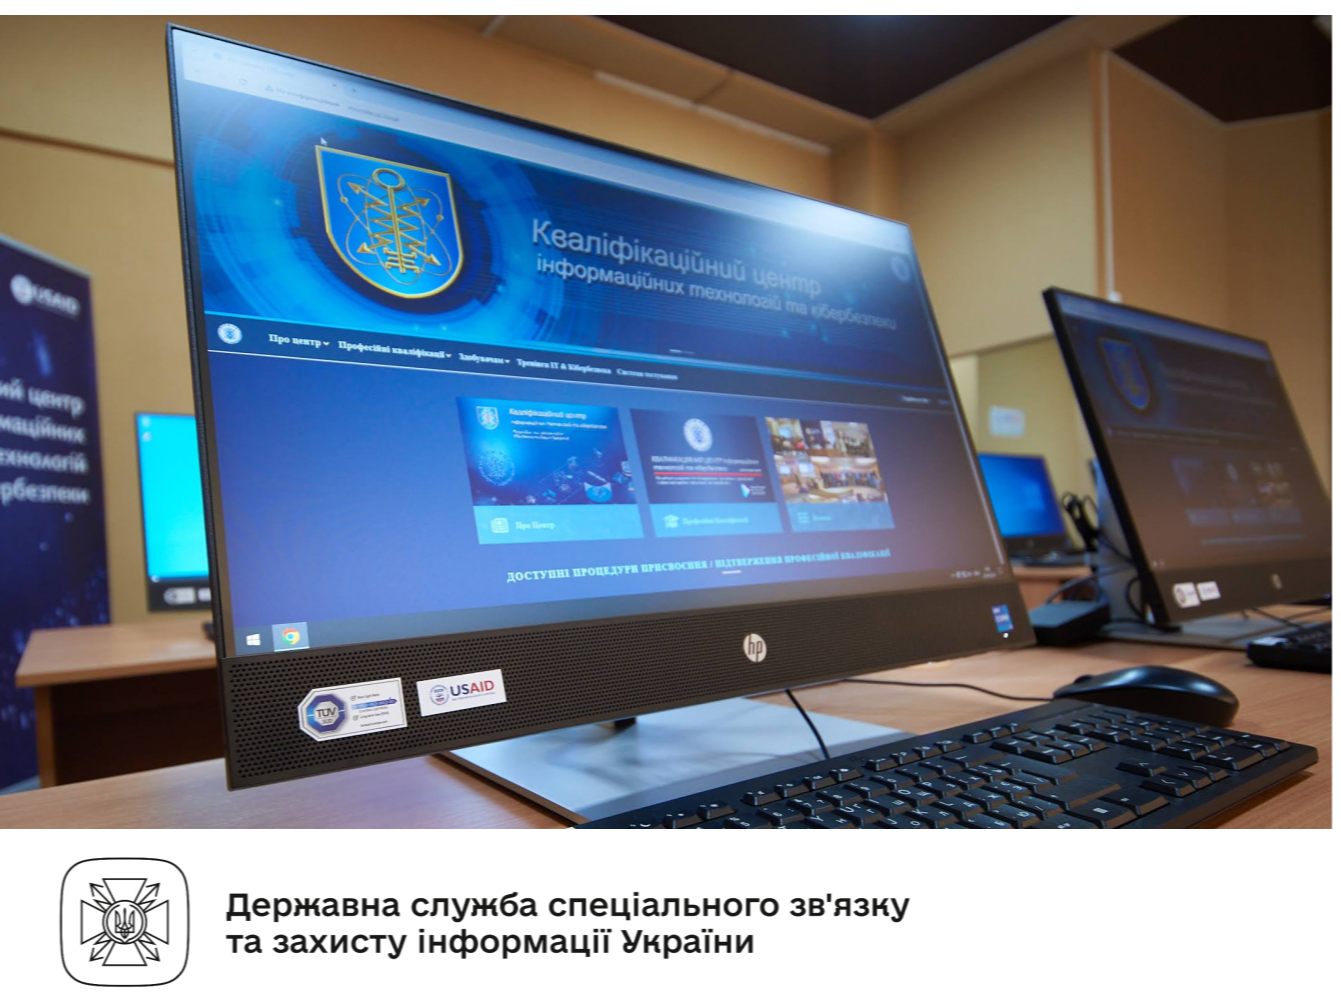 Перший в Україні Кваліфікаційний центр інформаційних технологій та кібербезпеки розпочав сертифікацію спеціалістів - Qualification Center